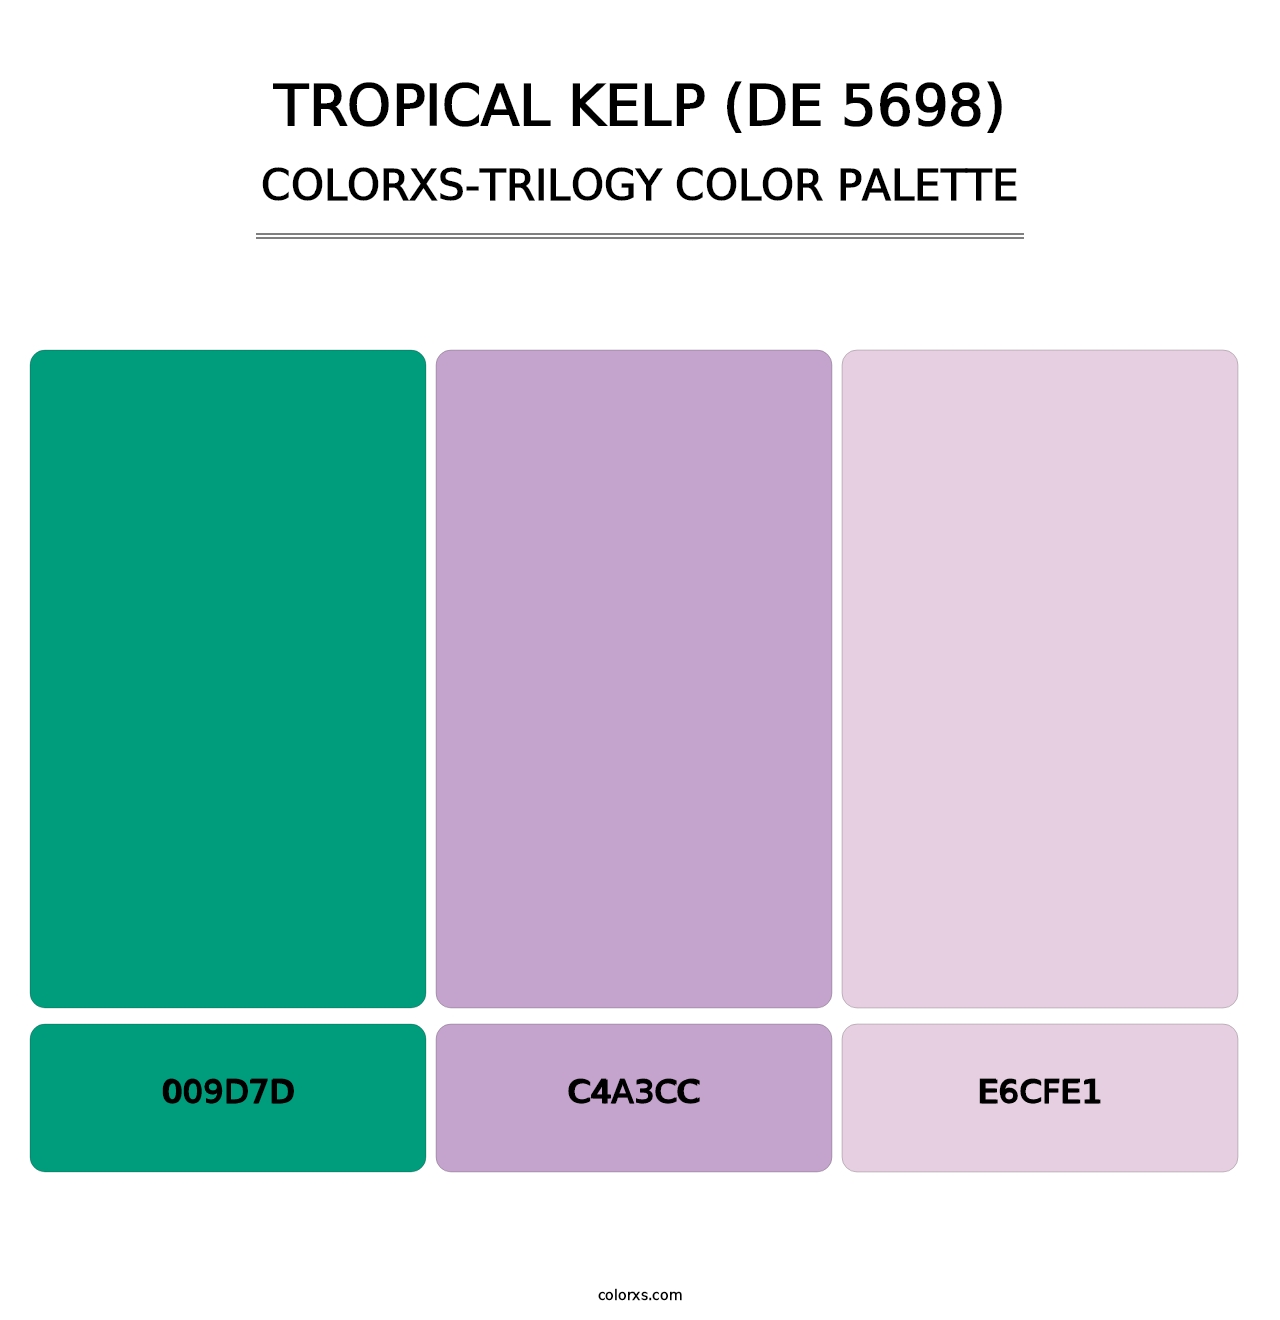 Tropical Kelp (DE 5698) - Colorxs Trilogy Palette